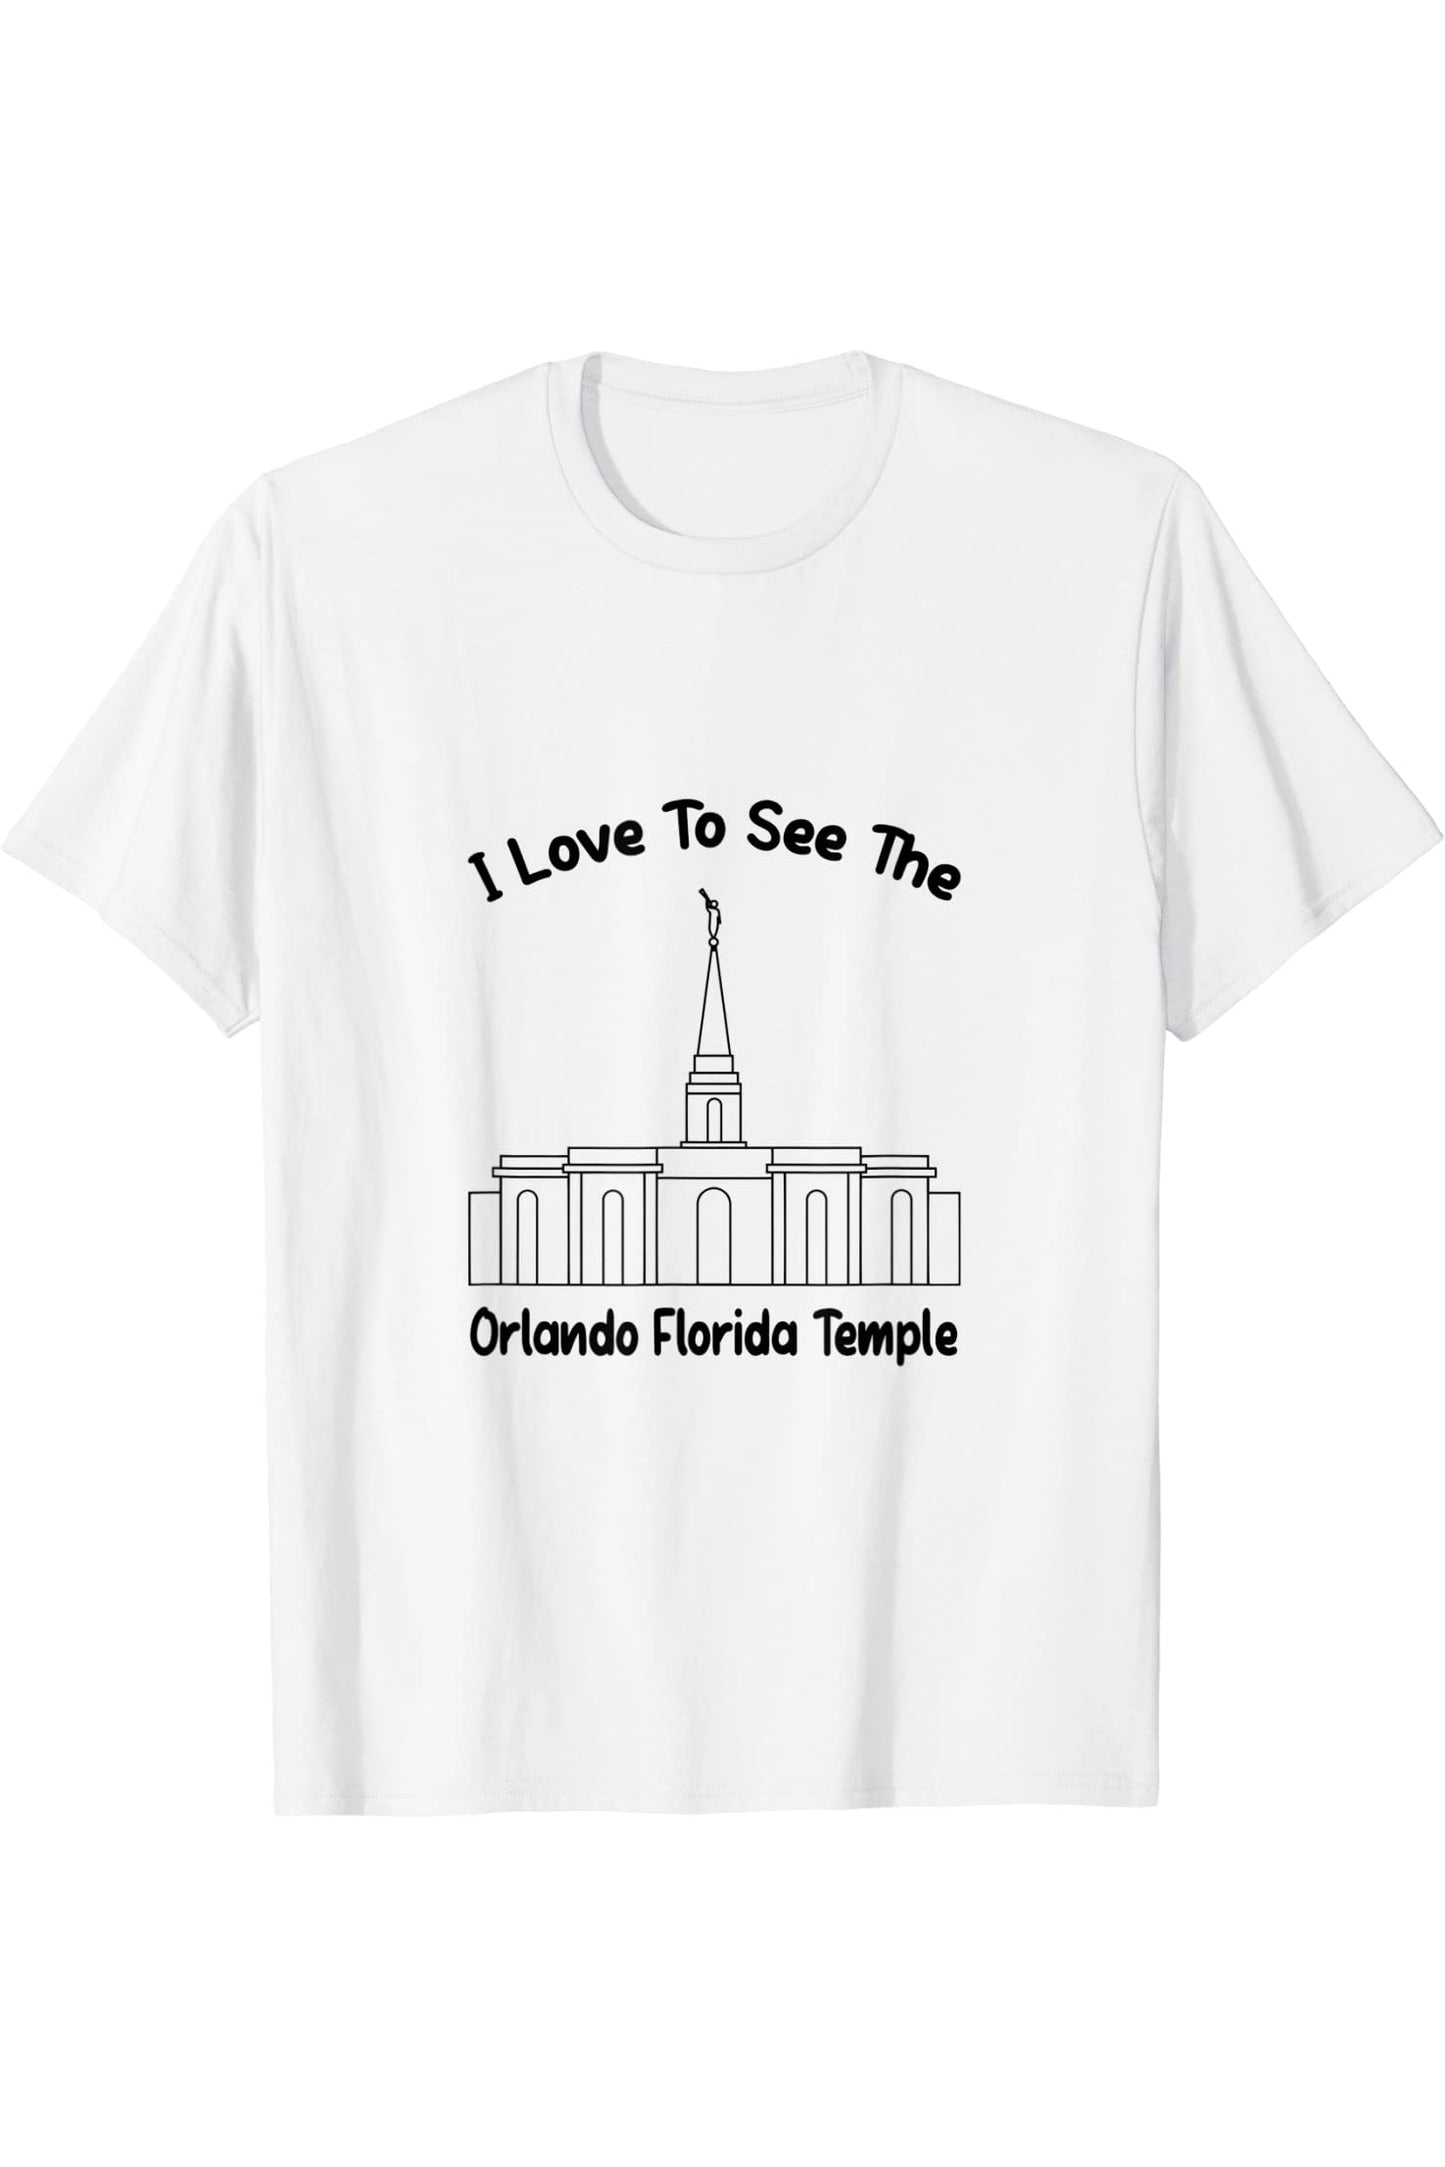 Orlando FL Temple, Adoro vedere il mio tempio, primario T-Shirt